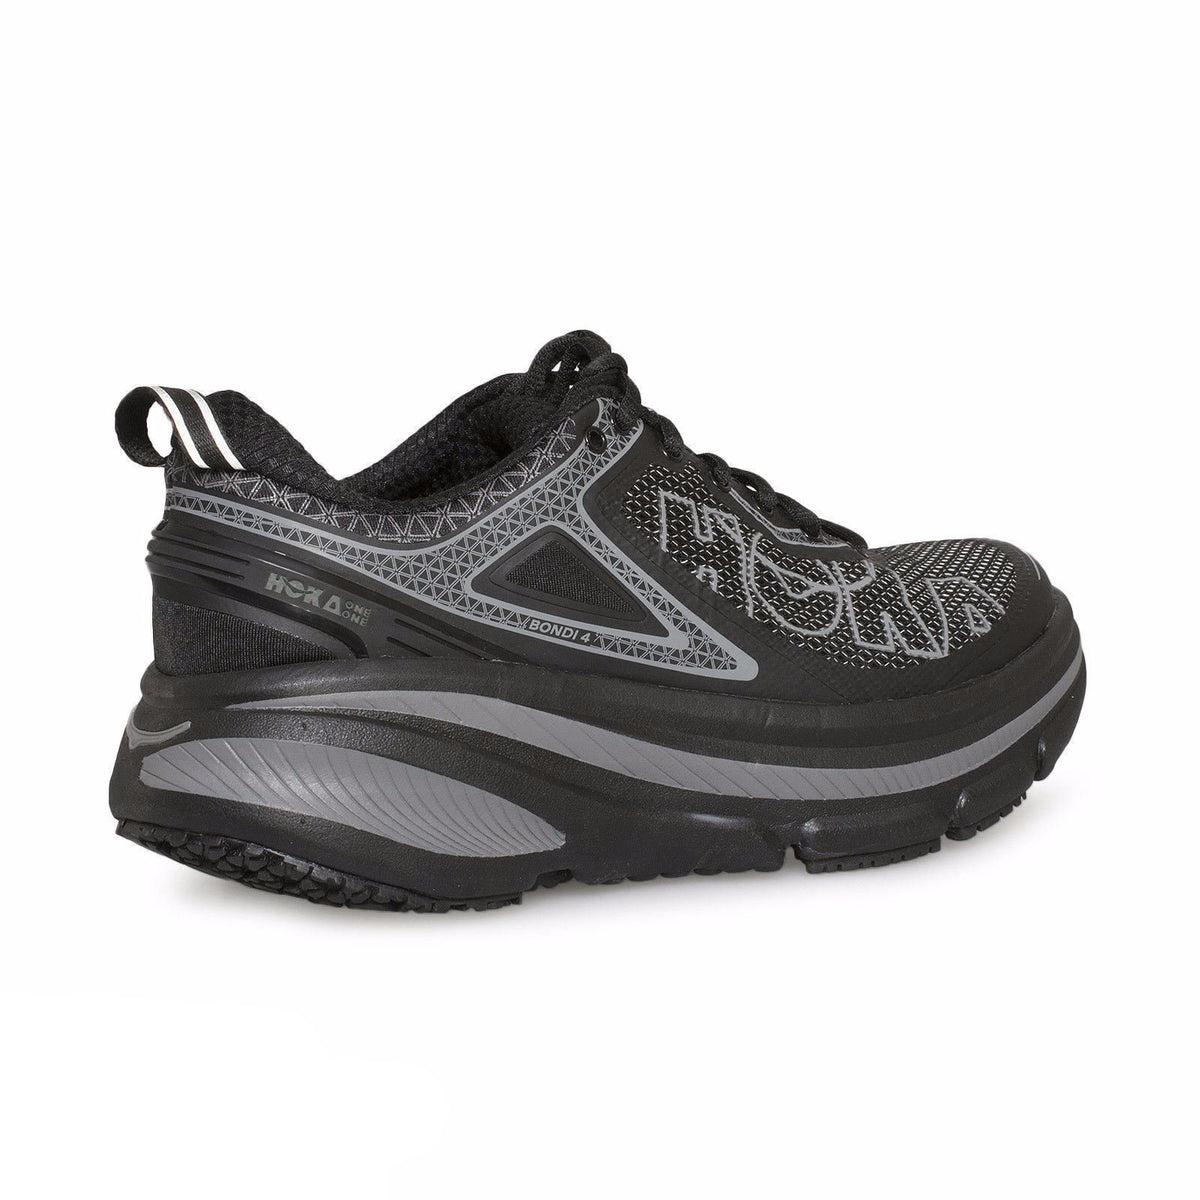 Hoka One One Bondi 4 Black Running Shoes – MyCozyBoots